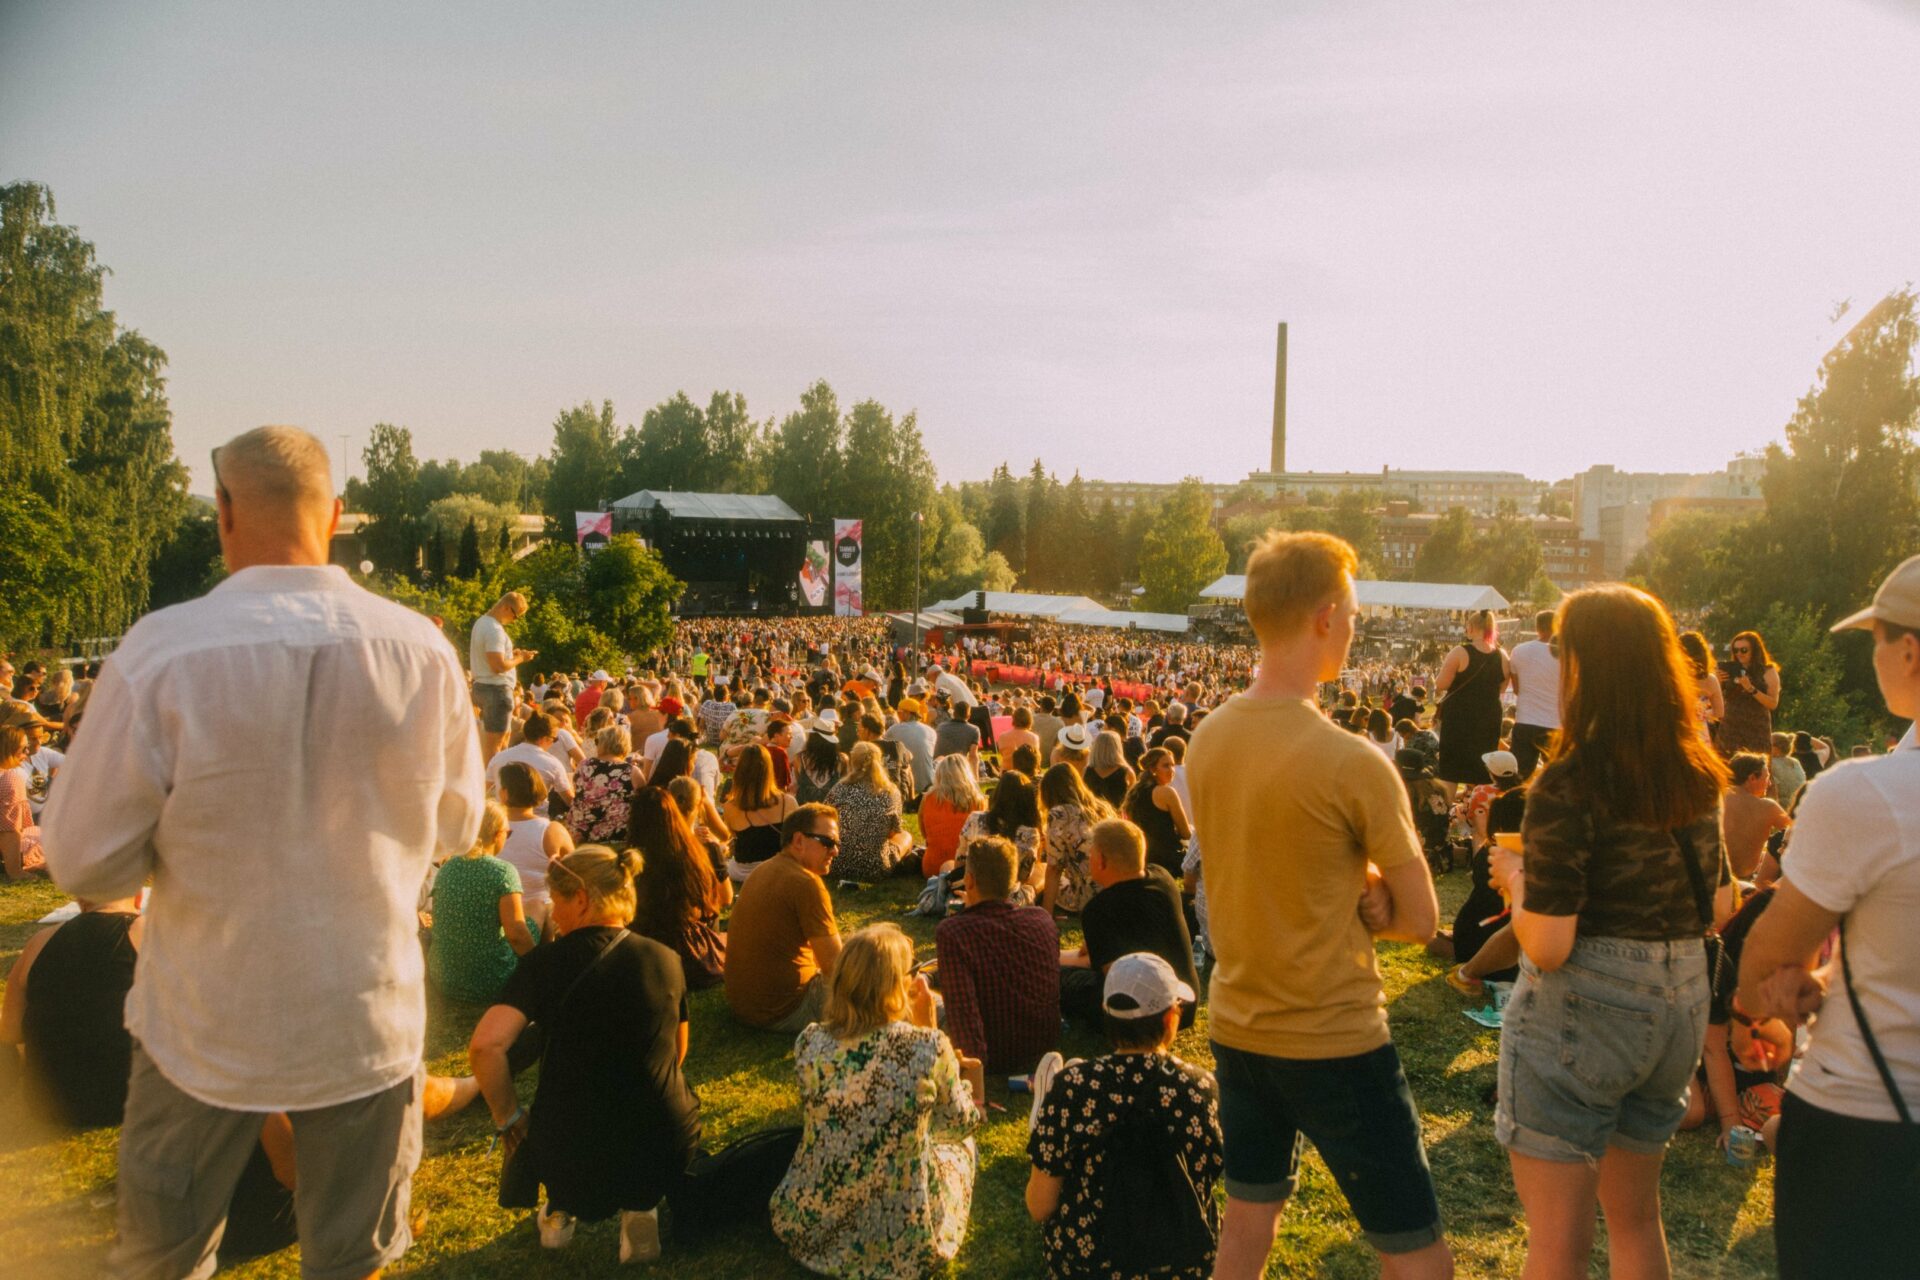 Yleisöä Tammerfestissa 2022 aurinkoisena päivänä. Osa yleisöstä istuu nurmikolla, taka-alalla näkyy Tammerfestin päälava, ja alue on vehreiden puiden ympäröimä.